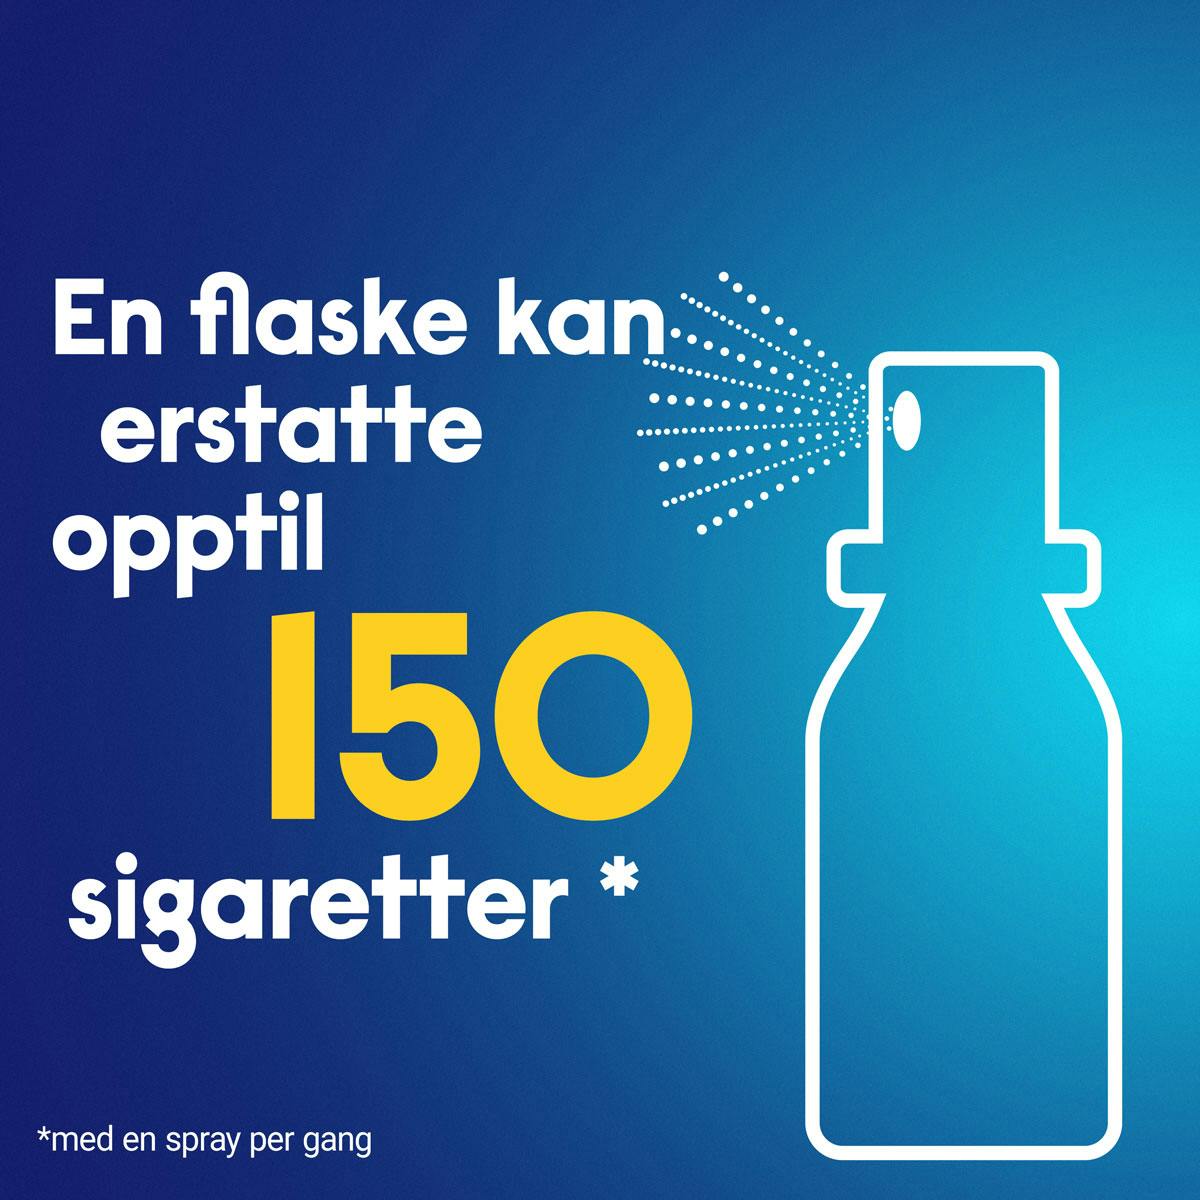 wn flaske kan erstatte opptil 150 sigaretter 